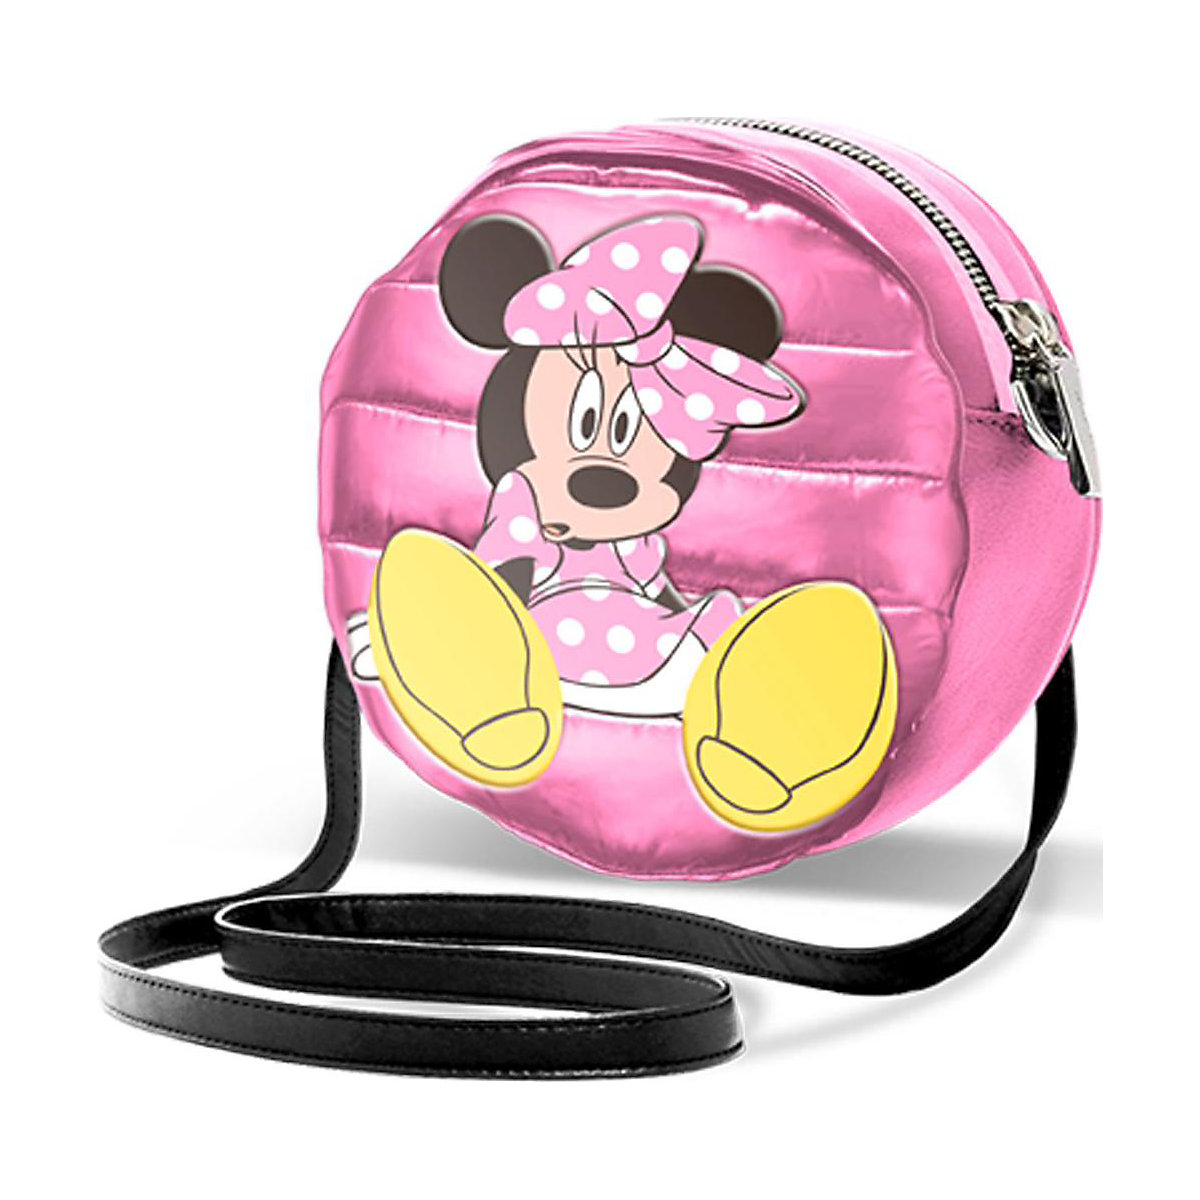 Umhängetäschchen rund Disney Minnie Mouse Fashion pink